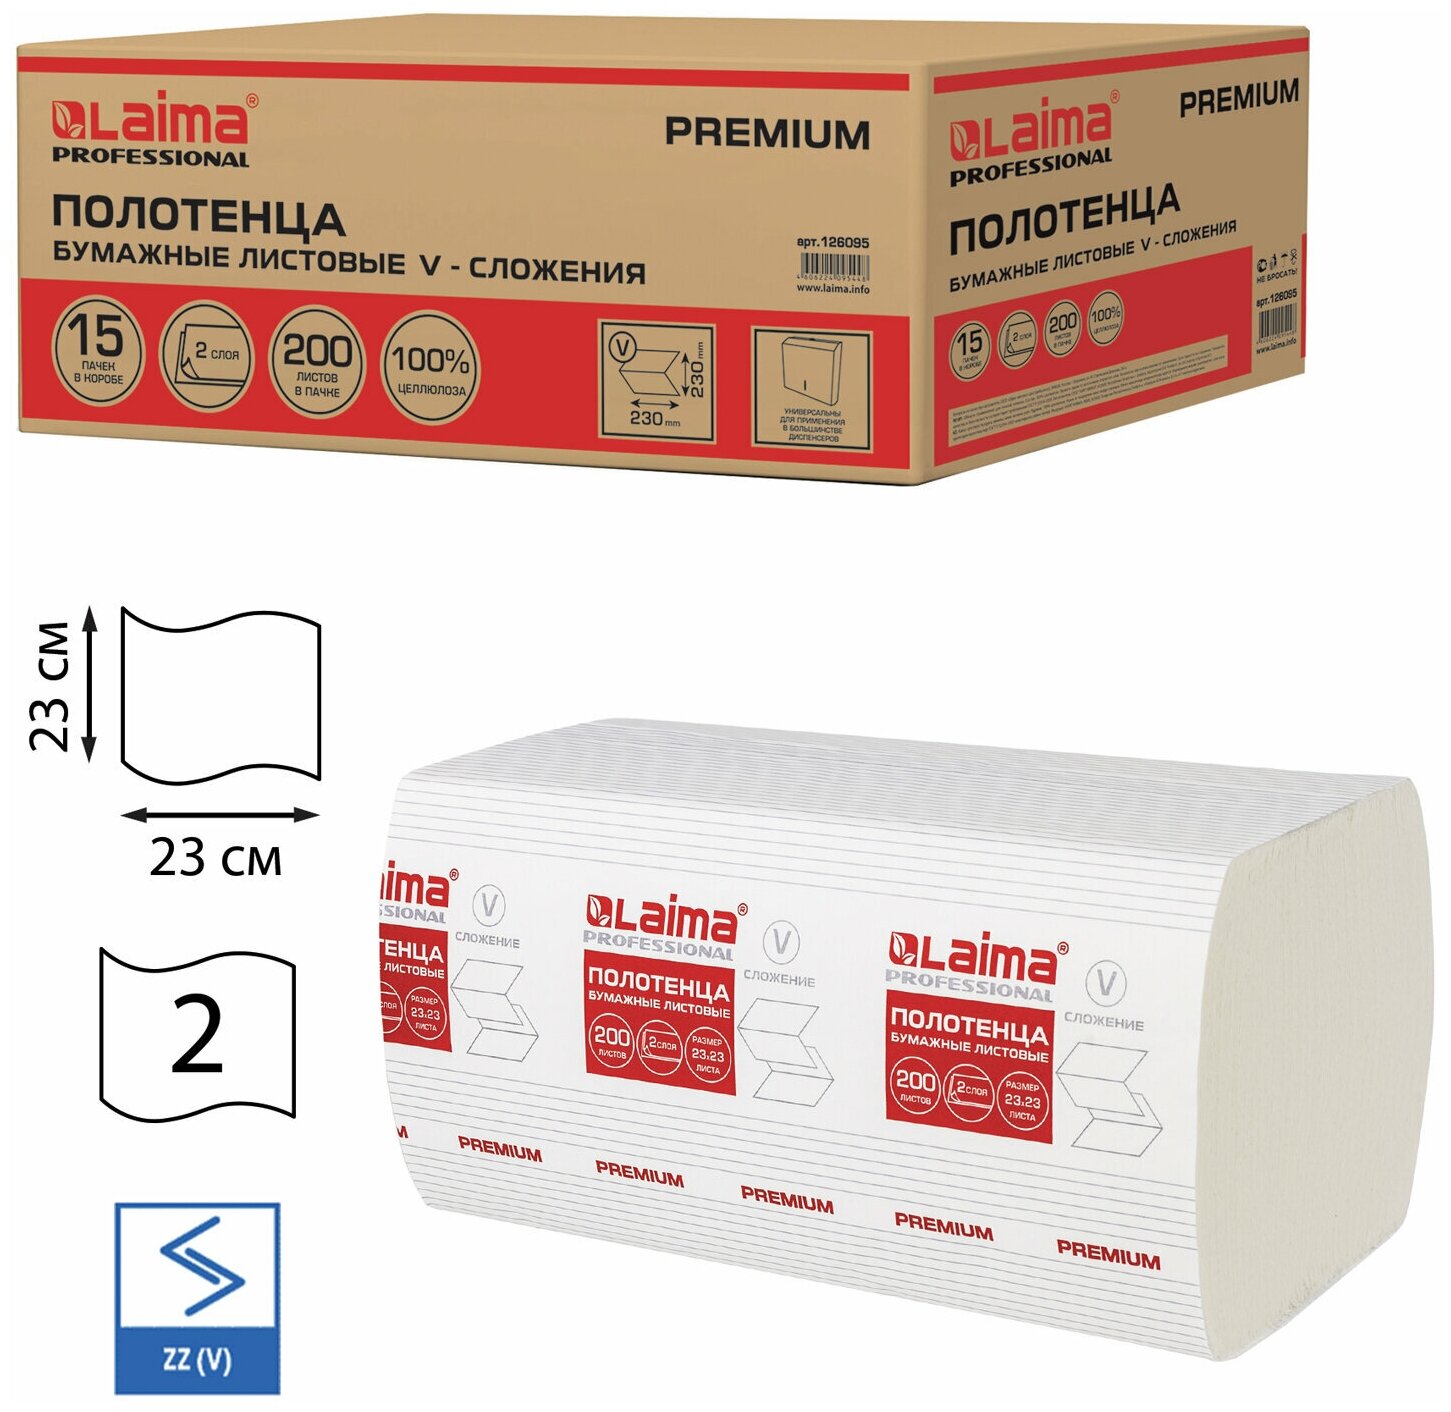 Полотенца бумажные 200 штук, LAIMA (H3) PREMIUM, 2-слойные, белые, комплект 15 пачек, 23х23, V-сложение, 126095 В наборе: 1компл.